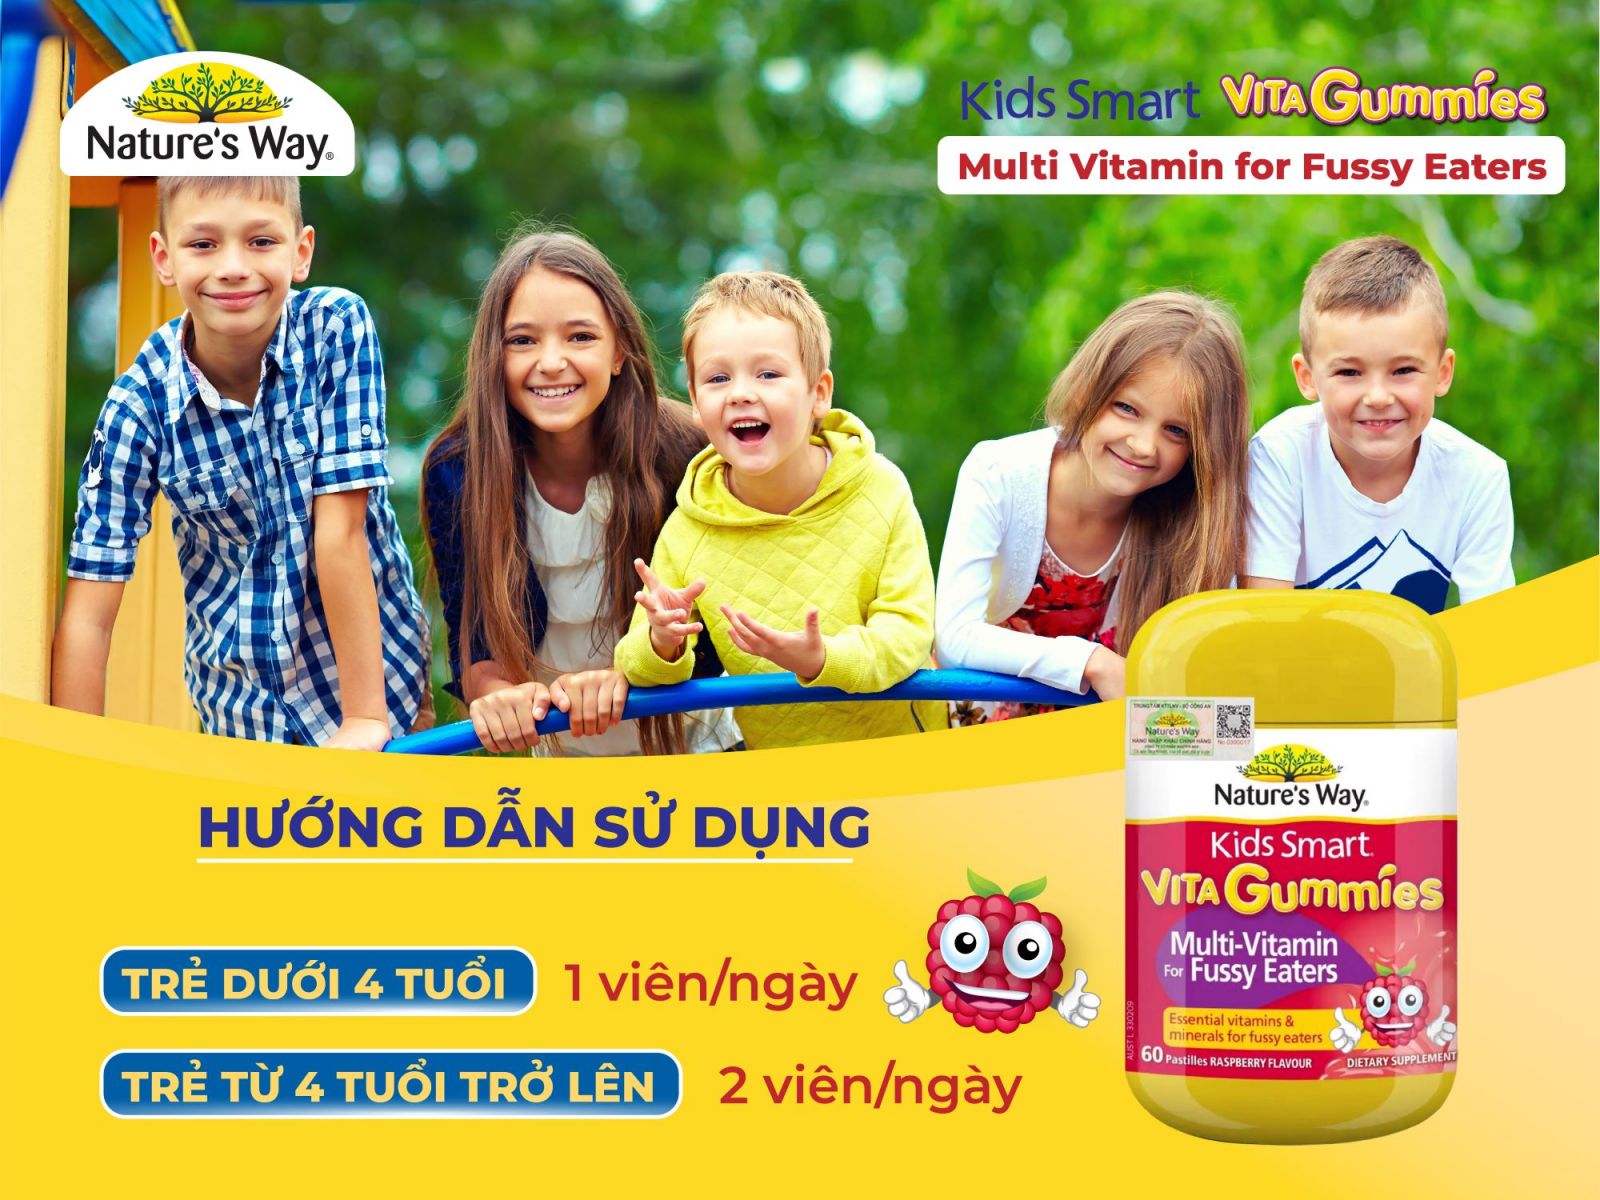 Sản phẩm Kids Smart Vita Gummies Multivitamin For Fussy Eaters chính hãng